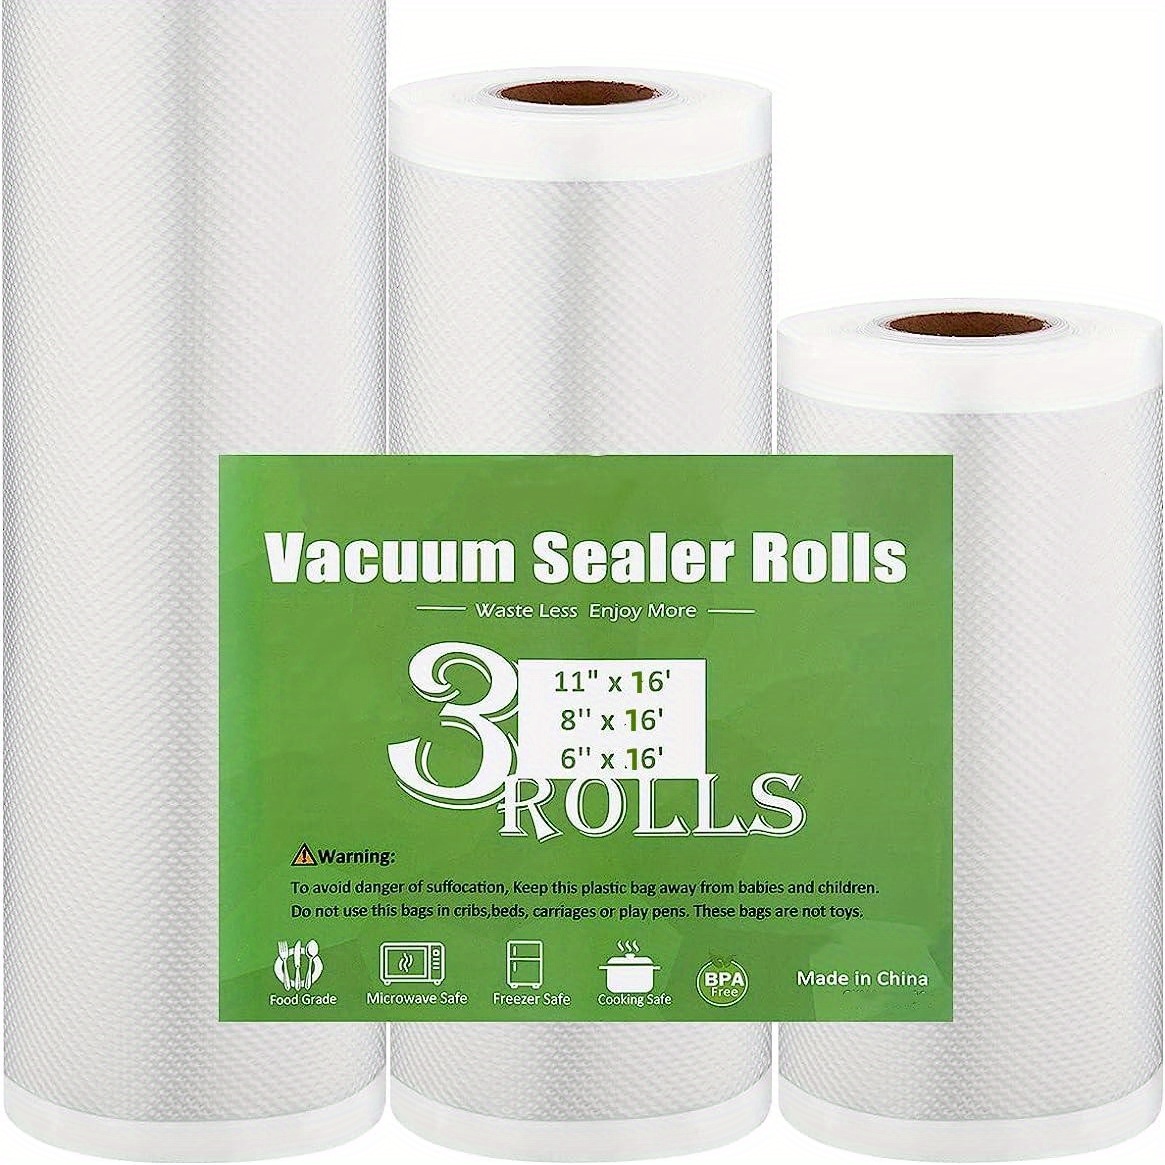 Foodsaver BPA-Free 11 X 16' Vacuum Seal Roll, 3 Pack & Reviews